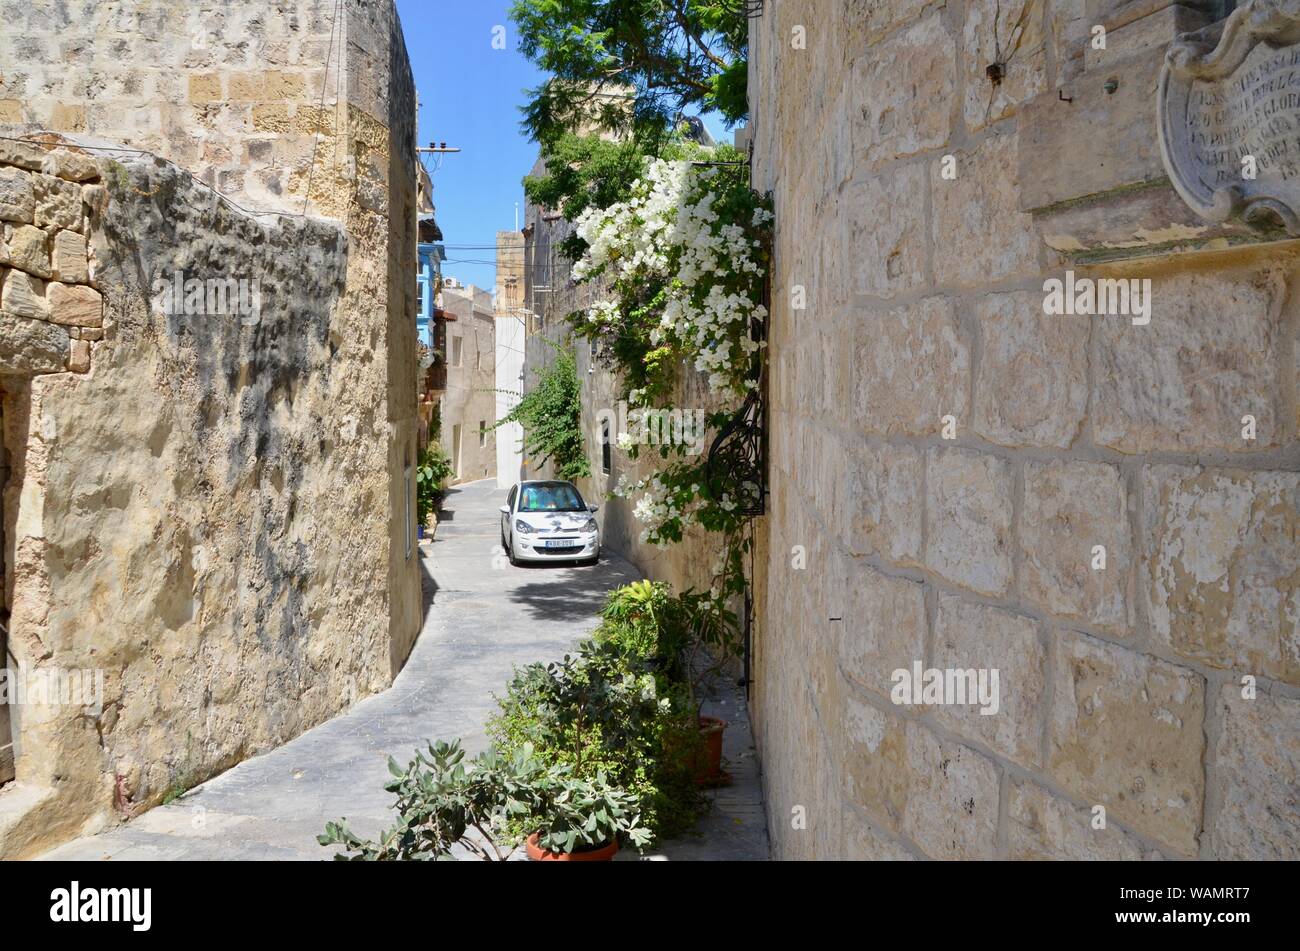 Mdina y Rabat callejuelas pintorescas y calles con los turistas y pintorescas en malta Foto de stock